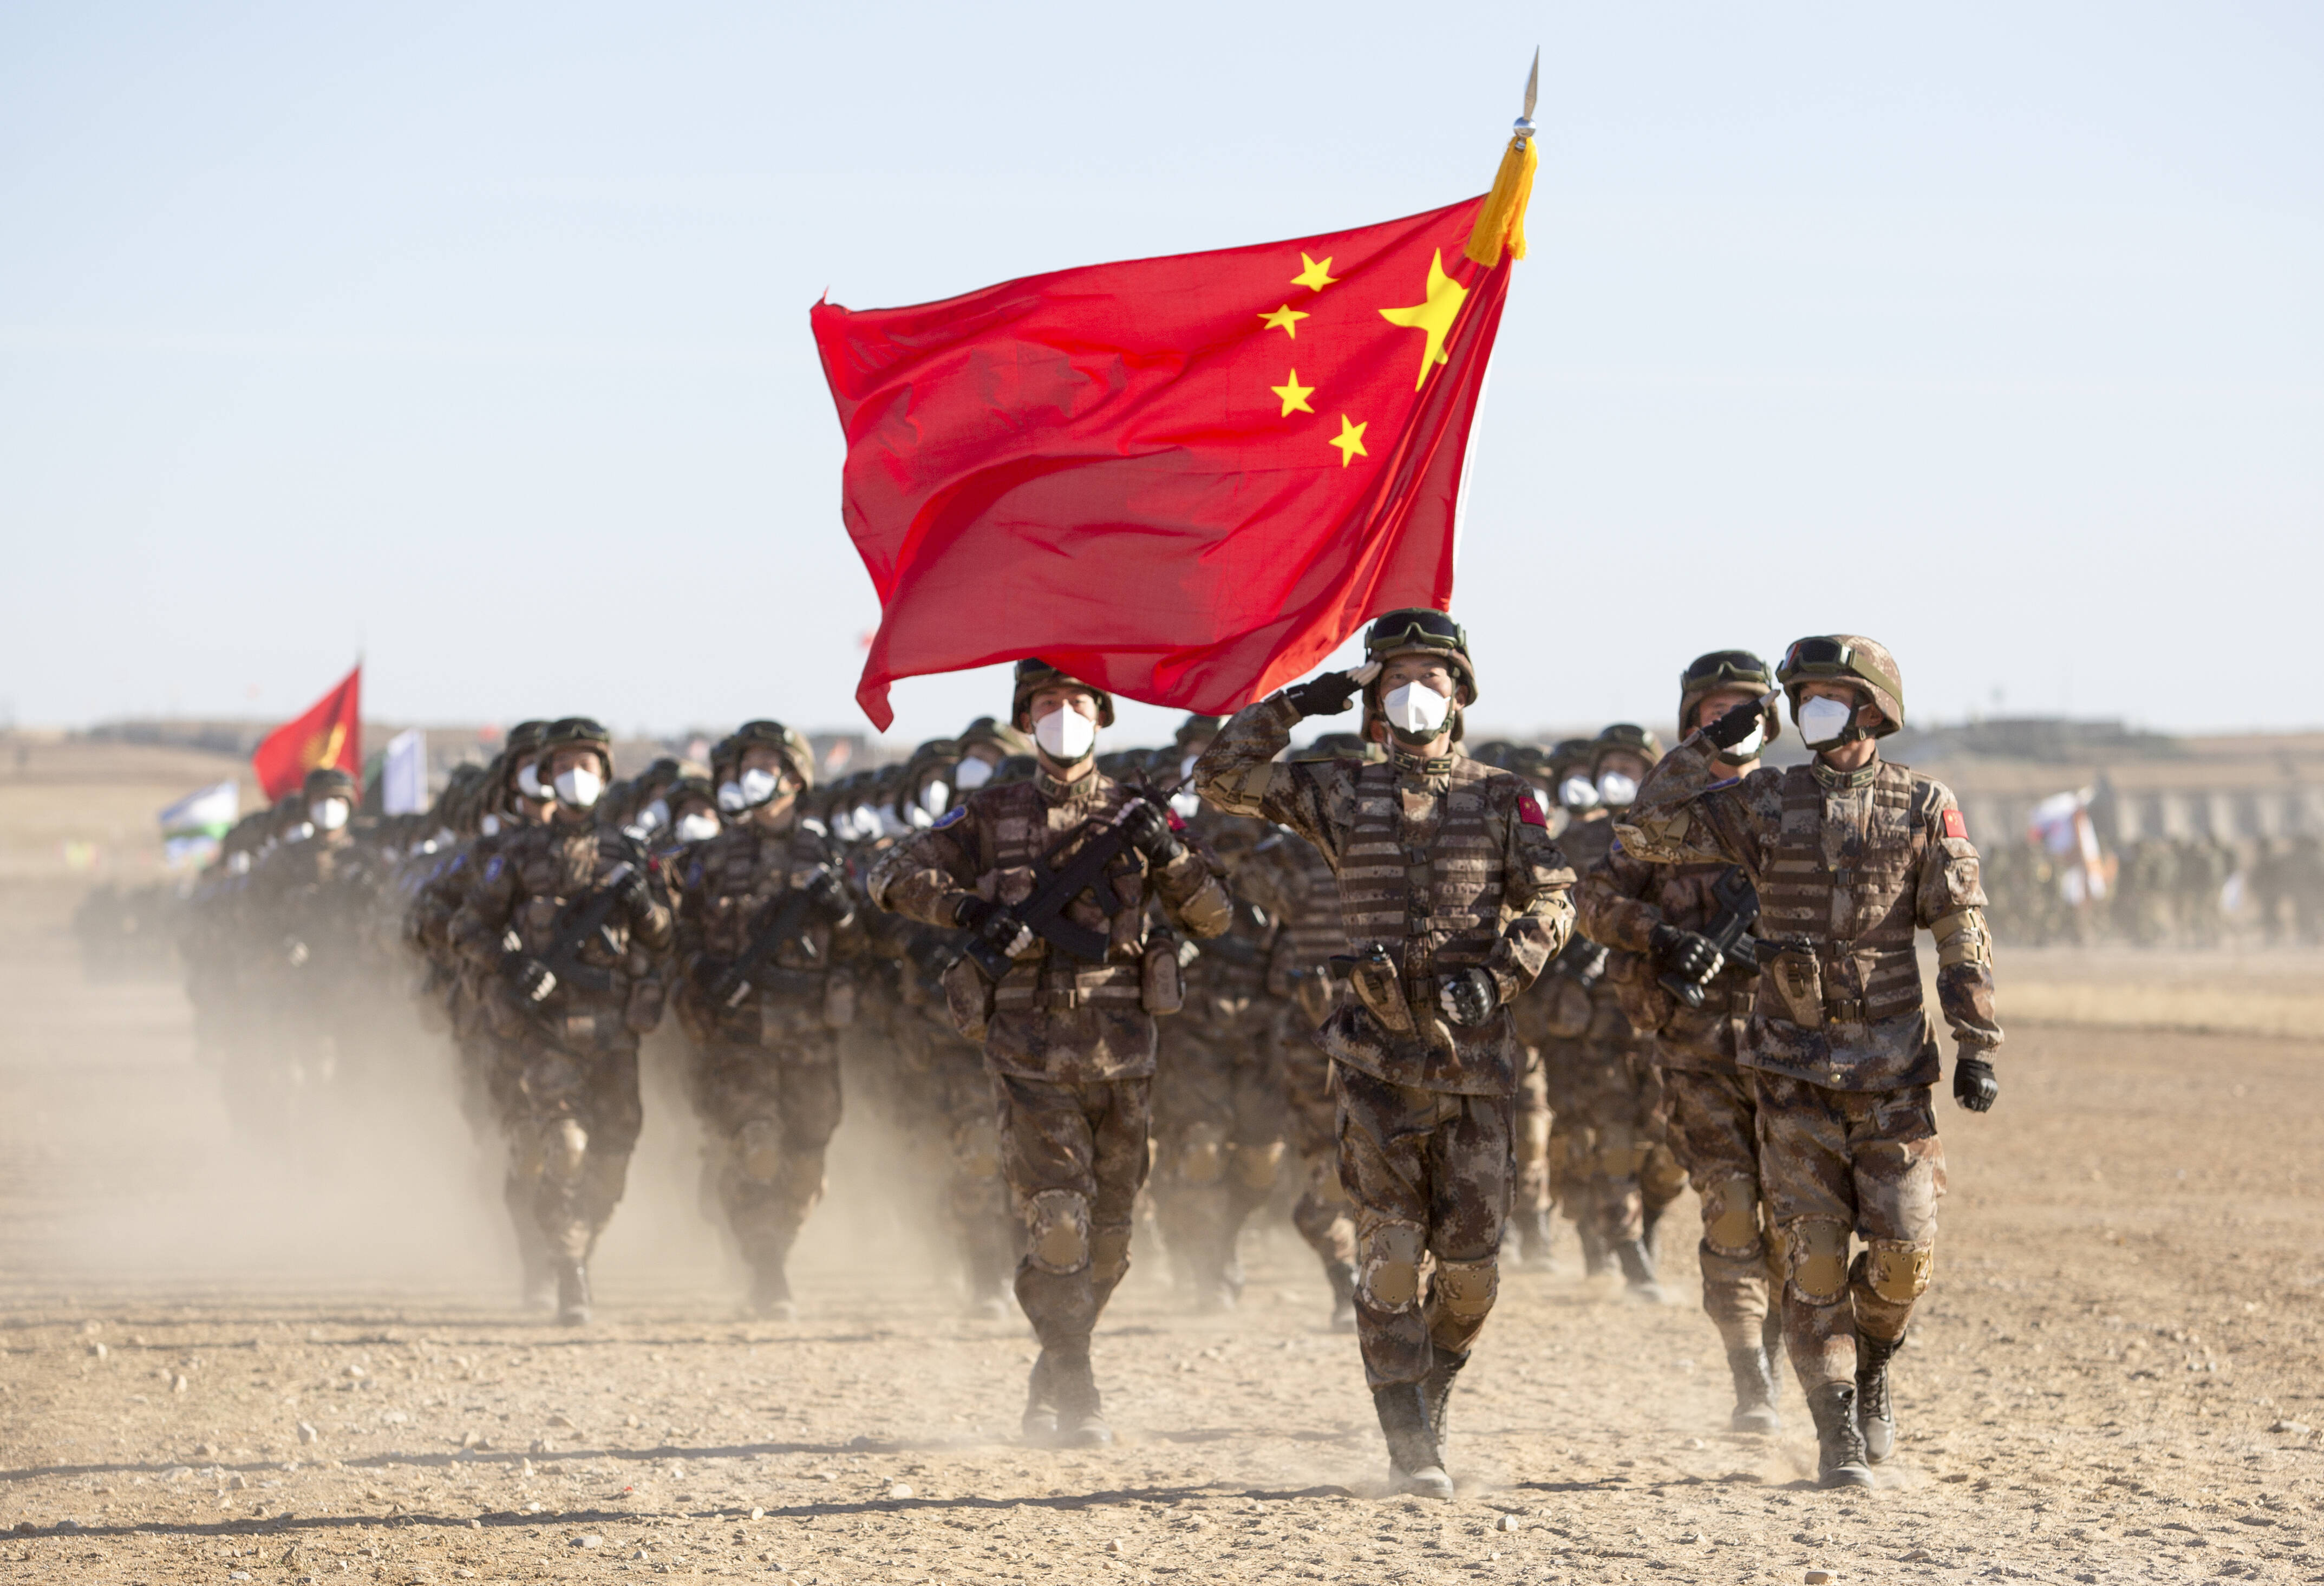 Krieg-zwischen-China-und-den-USA-Vorbereitungen-laufen-General-sicher-Kampf-ist-unvermeidbar-